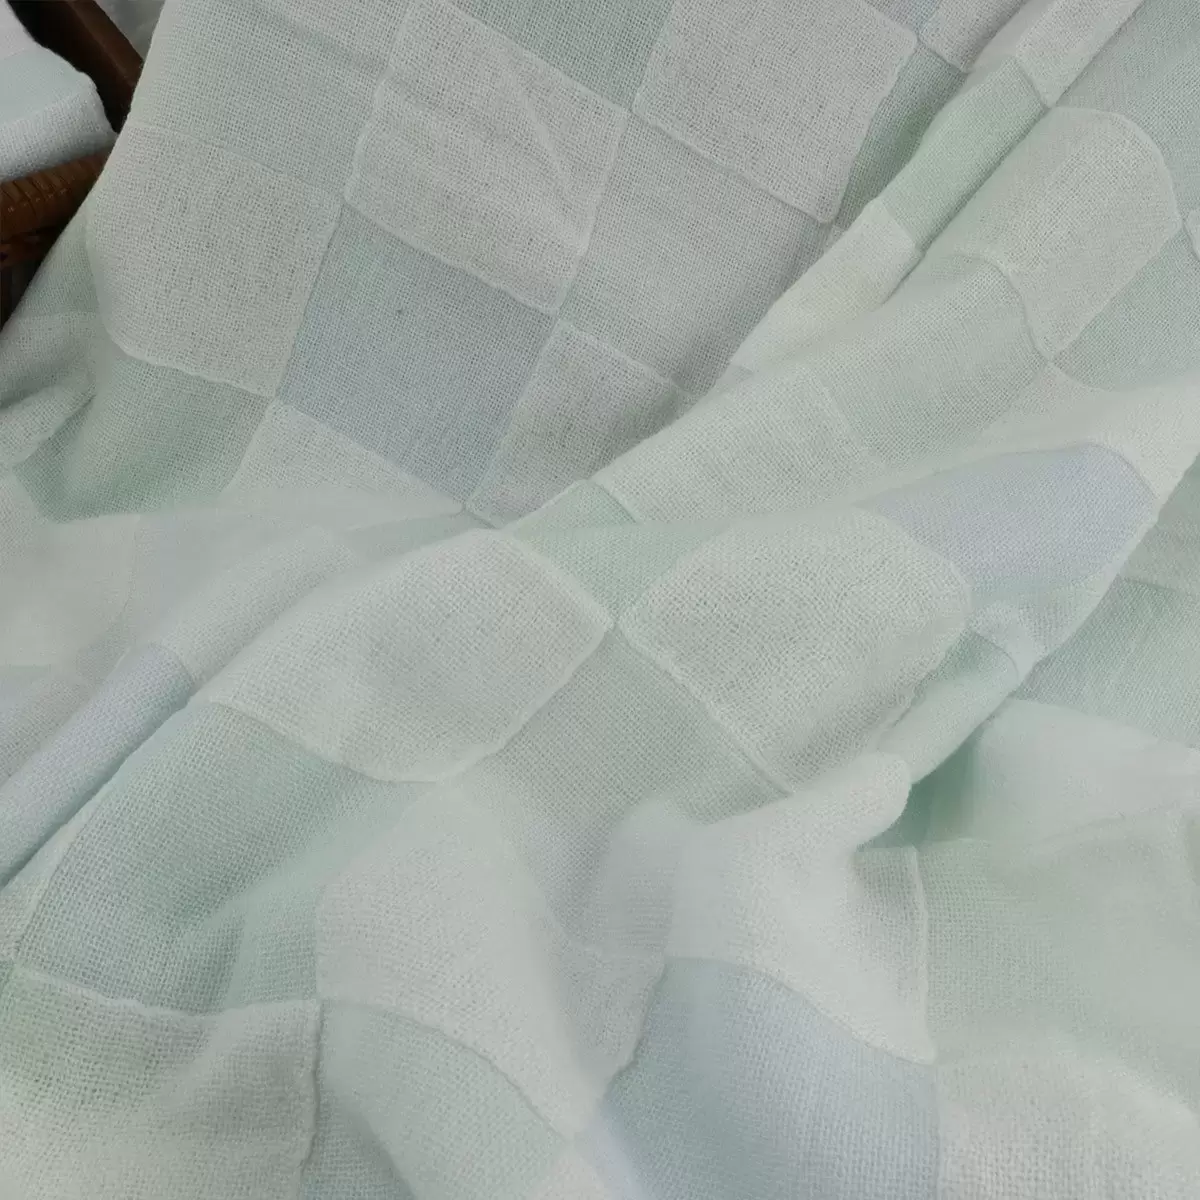 Gemini 雙星毛巾彩色方格雙層紗布浴巾 2入組 66公分 X 137公分 灰 + 粉 / 黃